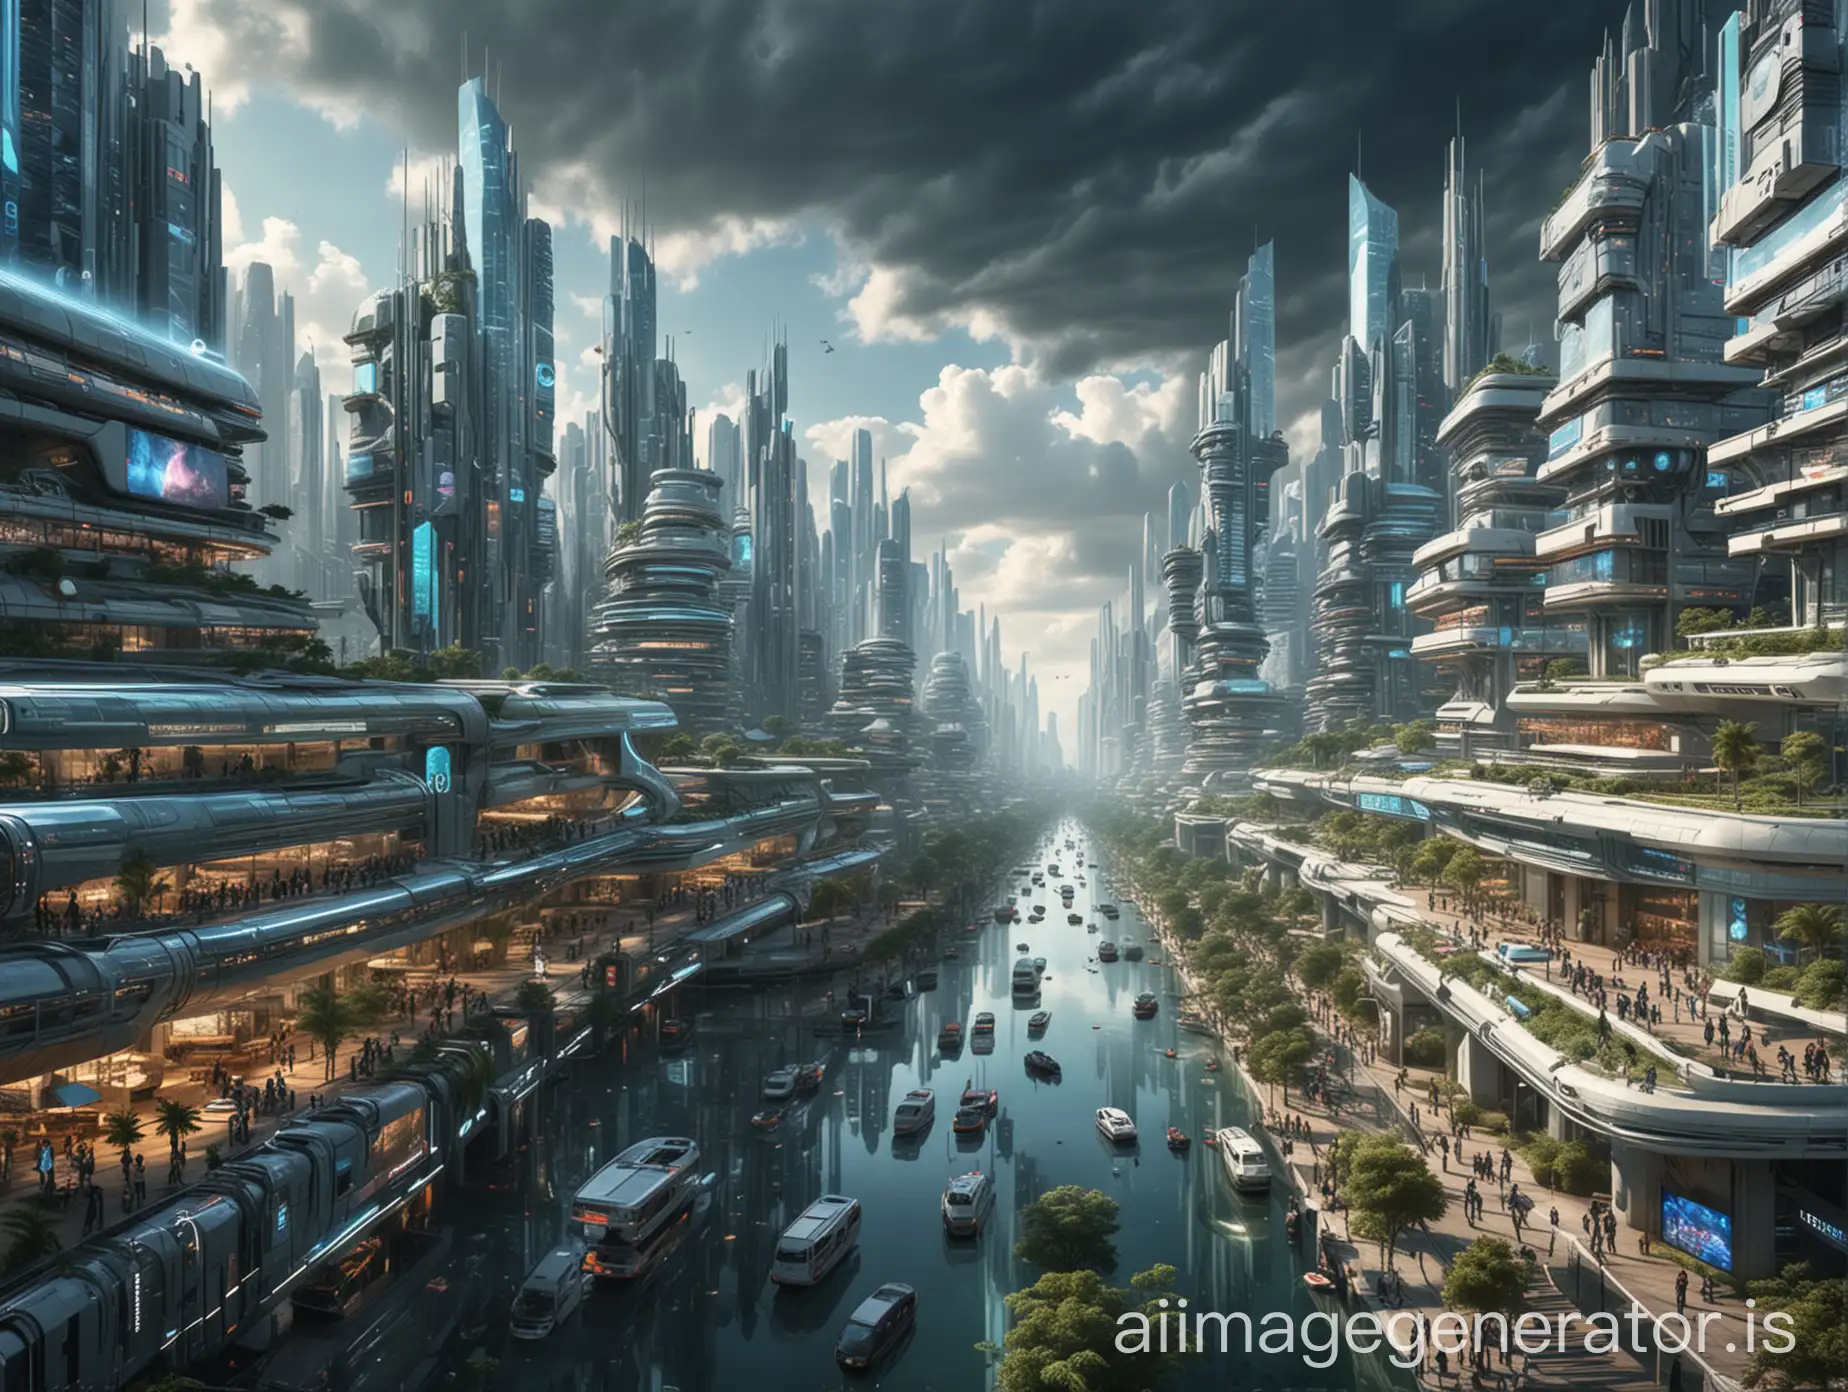 Futuristic-Cityscape-A-Vision-of-Modern-Technology-Utopia